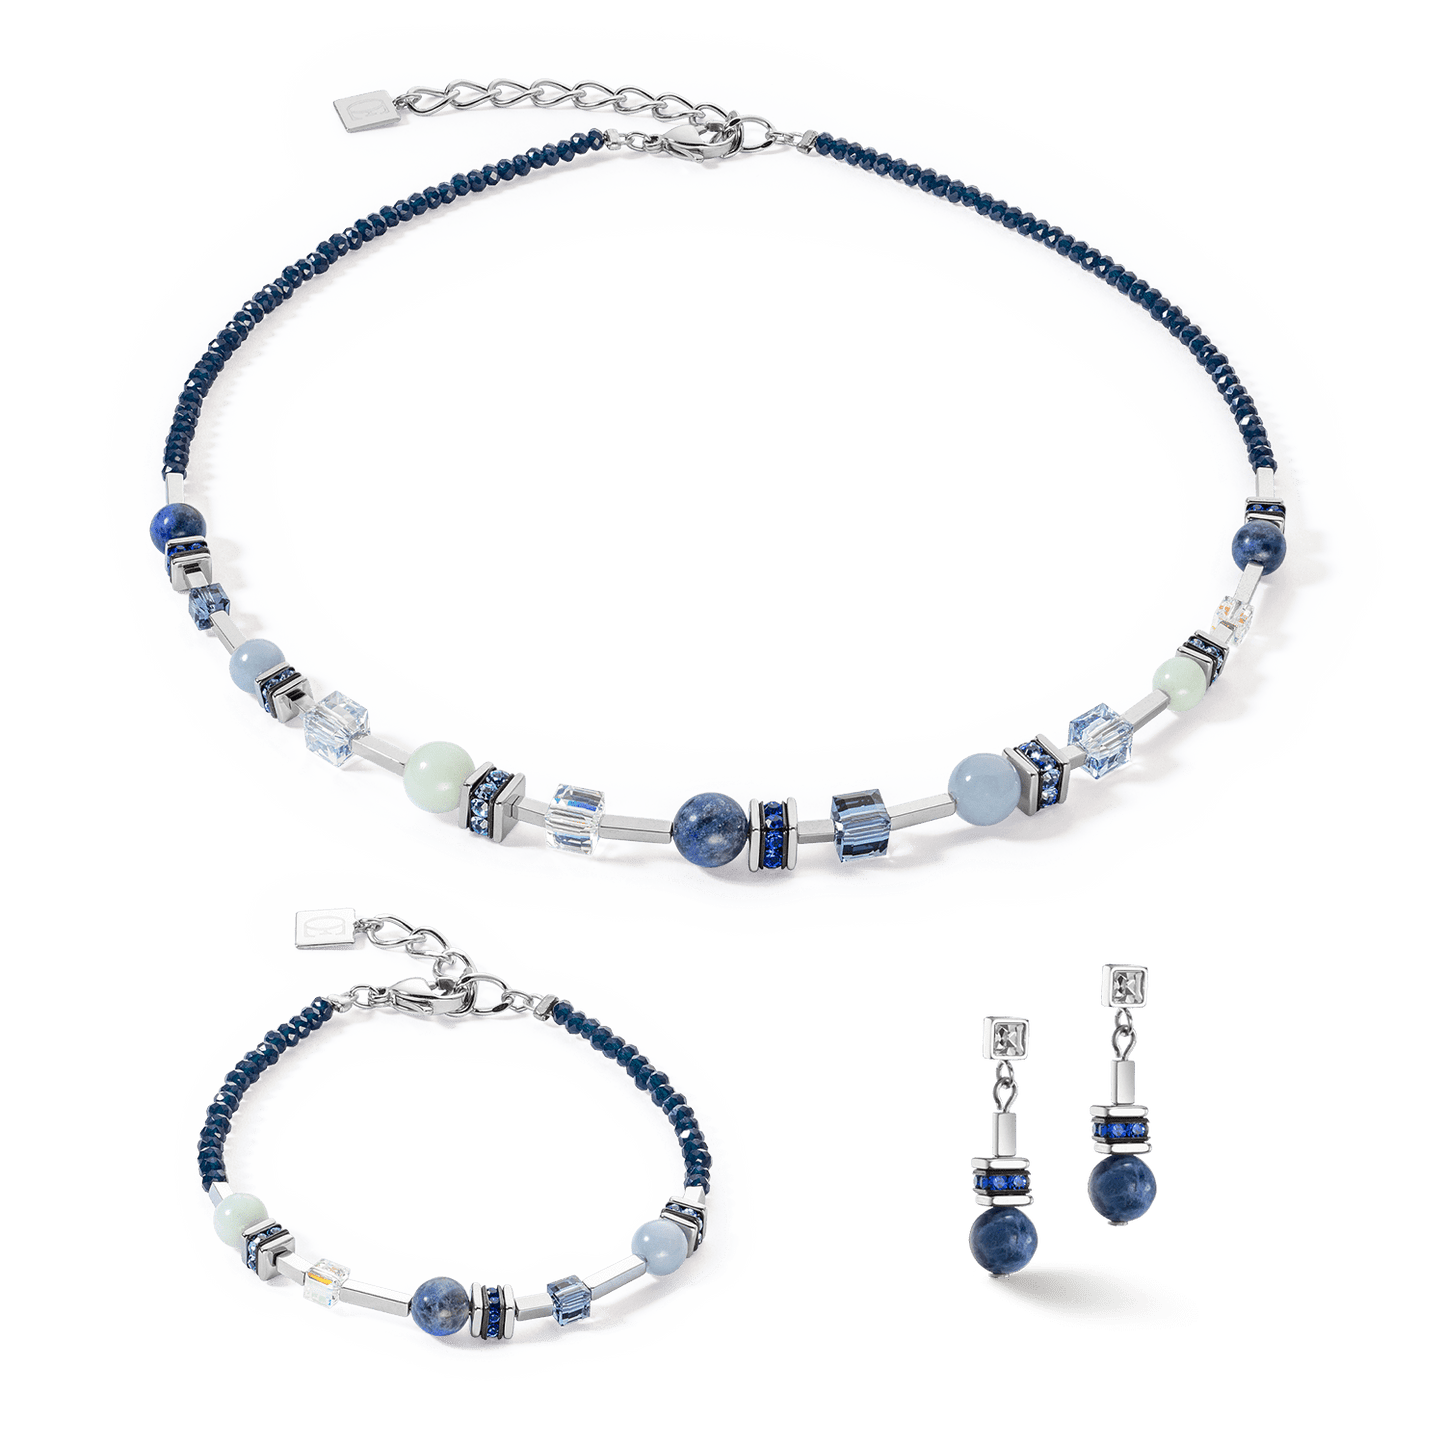 NKL Blue Altantis Spheres Necklace